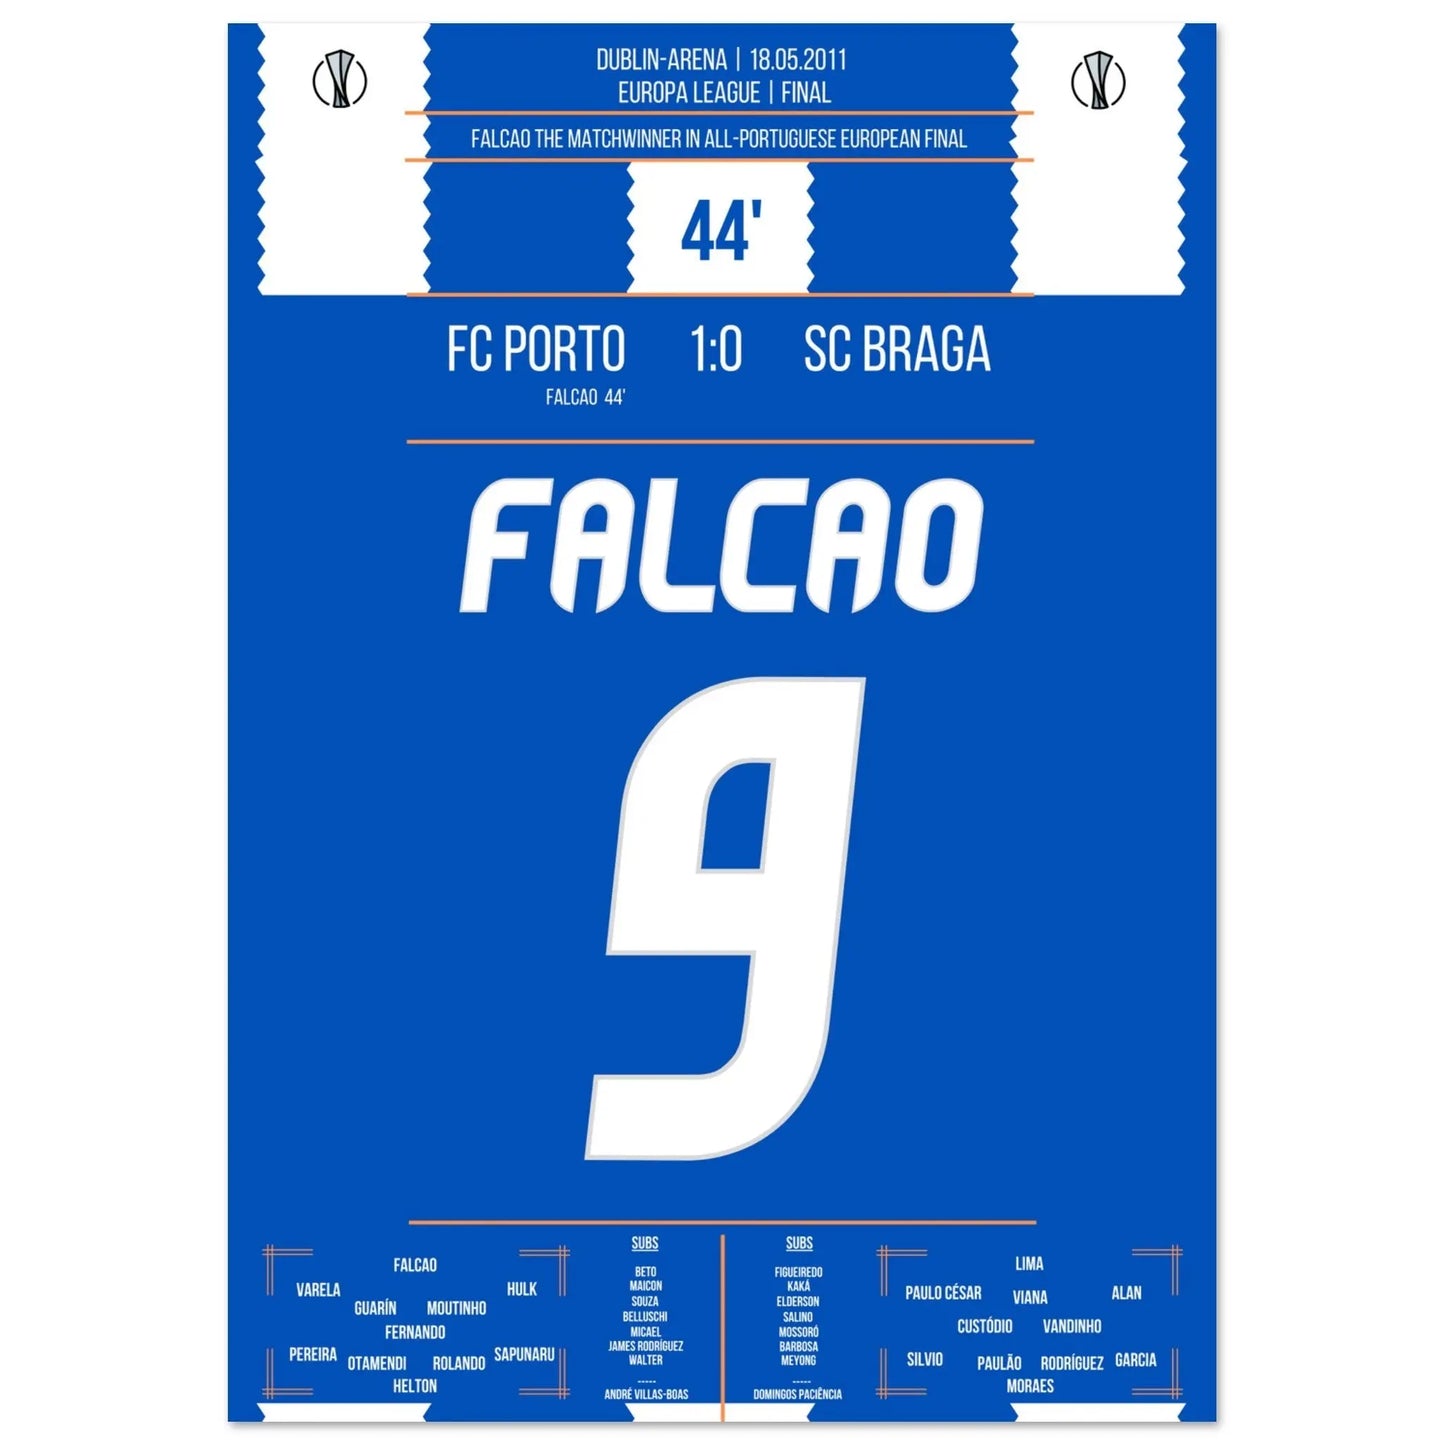 Falcao de wedstrijdwinnaar voor Porto in de Europa League-finale van 2011